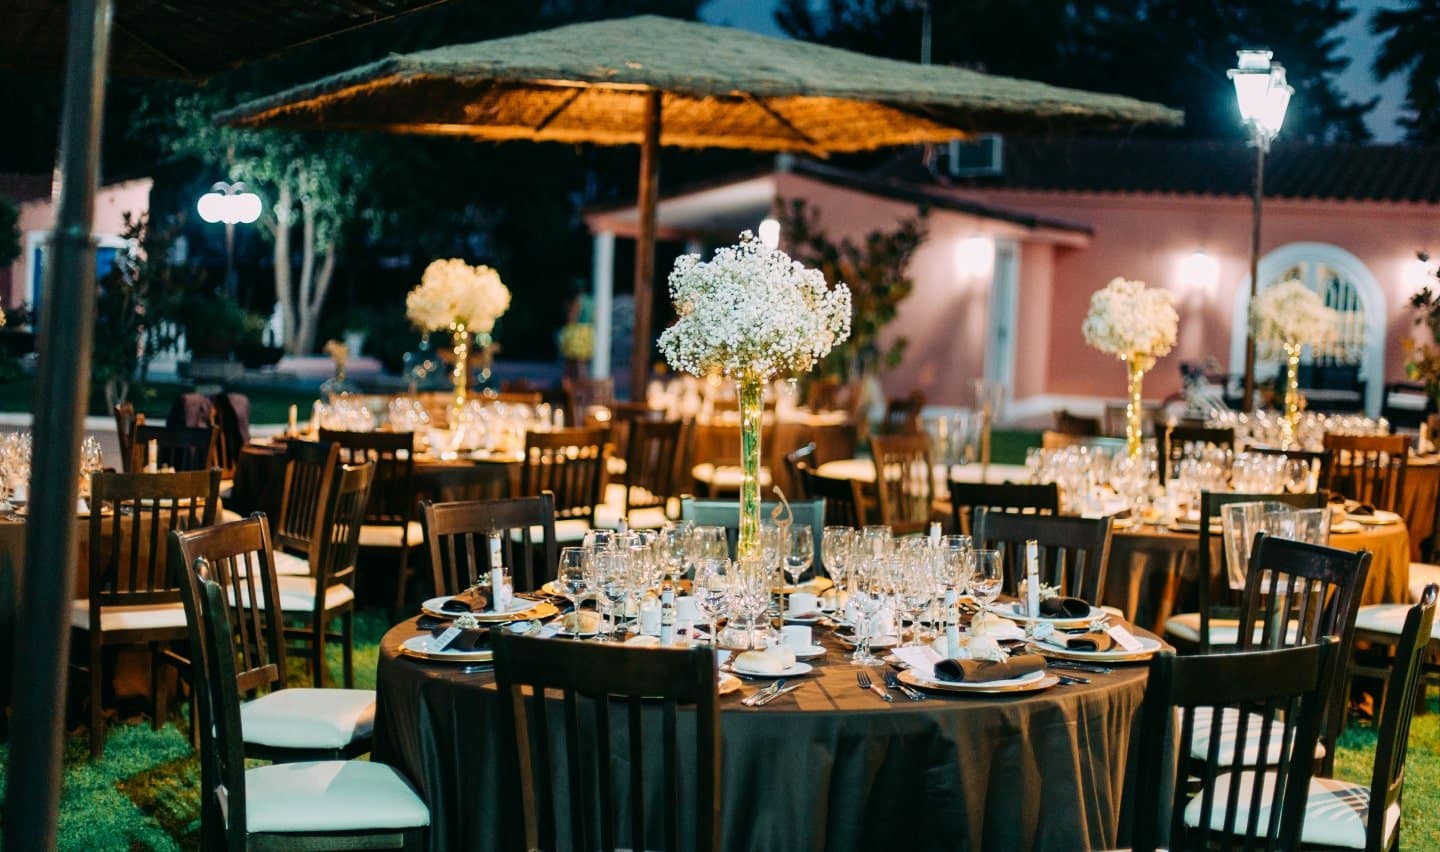 Mesa con 9 sillas, cubertería y vasos con una gran flor en el centro. Al fondo se pueden observar un parasol sobre unas mesas.